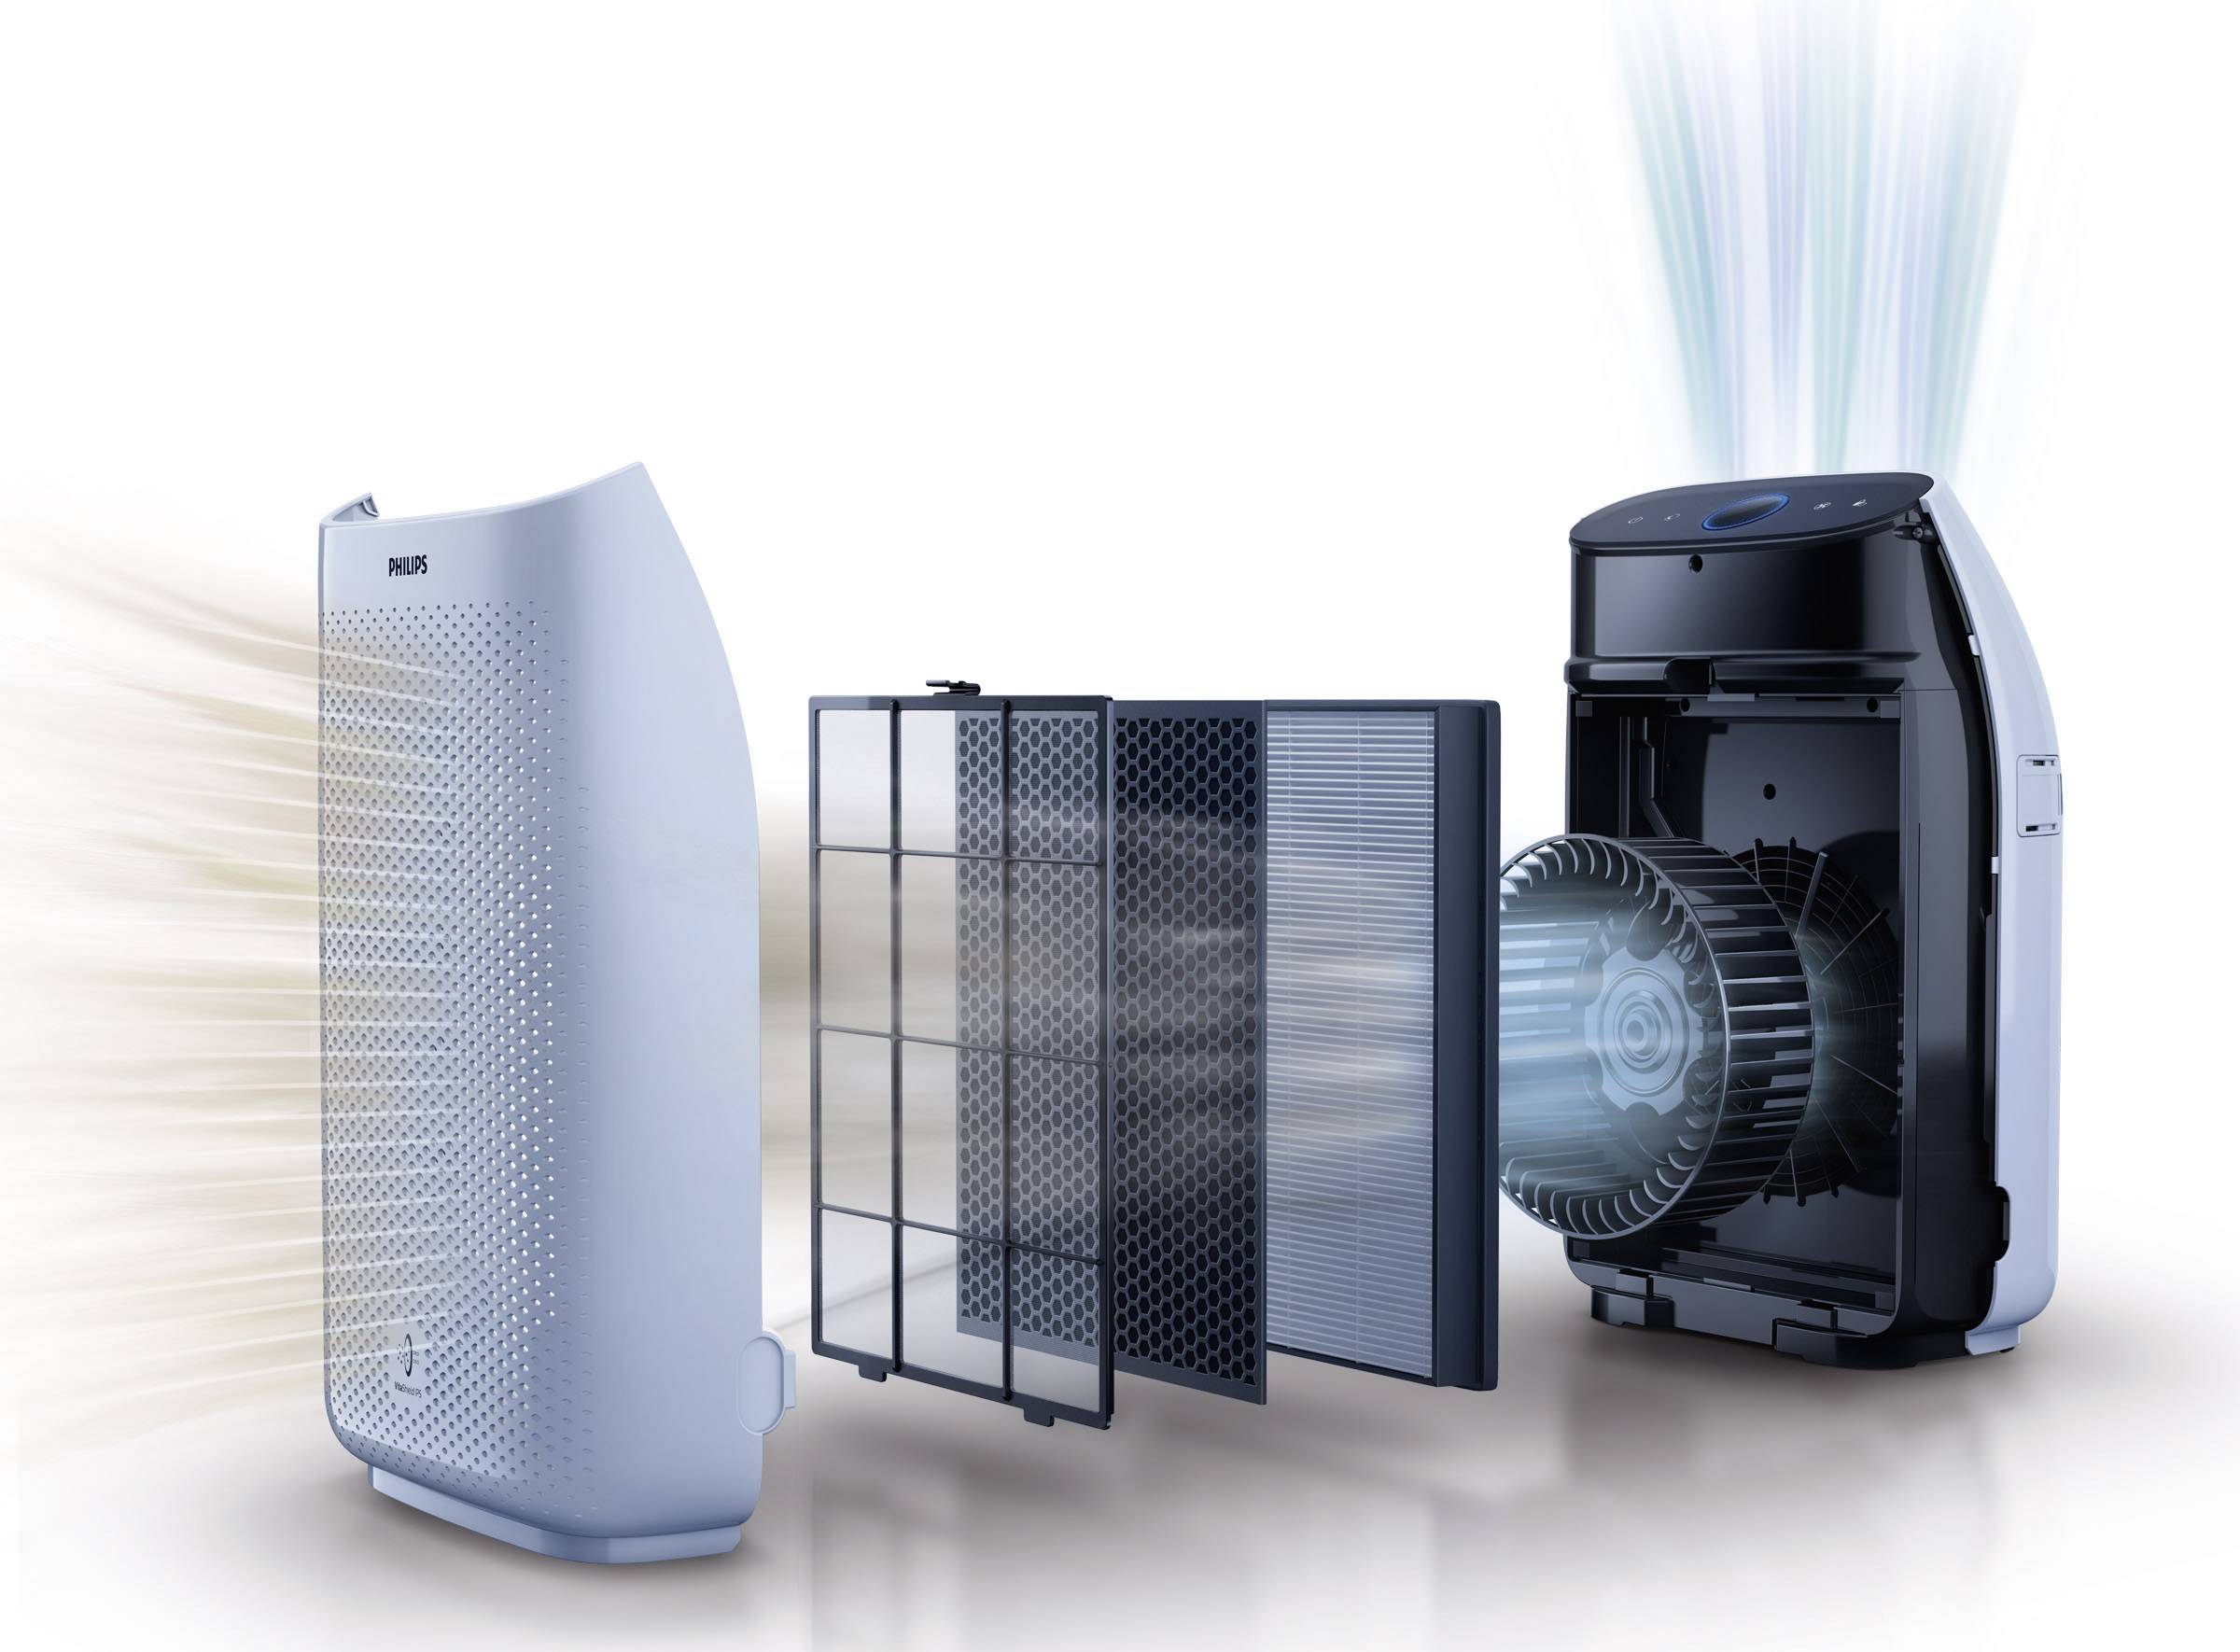 Фильтры очищающие воздух. Philips Air Purifier. Фильтры для воздухоочистители Air Purifier. Воздухоочиститель Siemens Air Purifier. Philips ac1214.